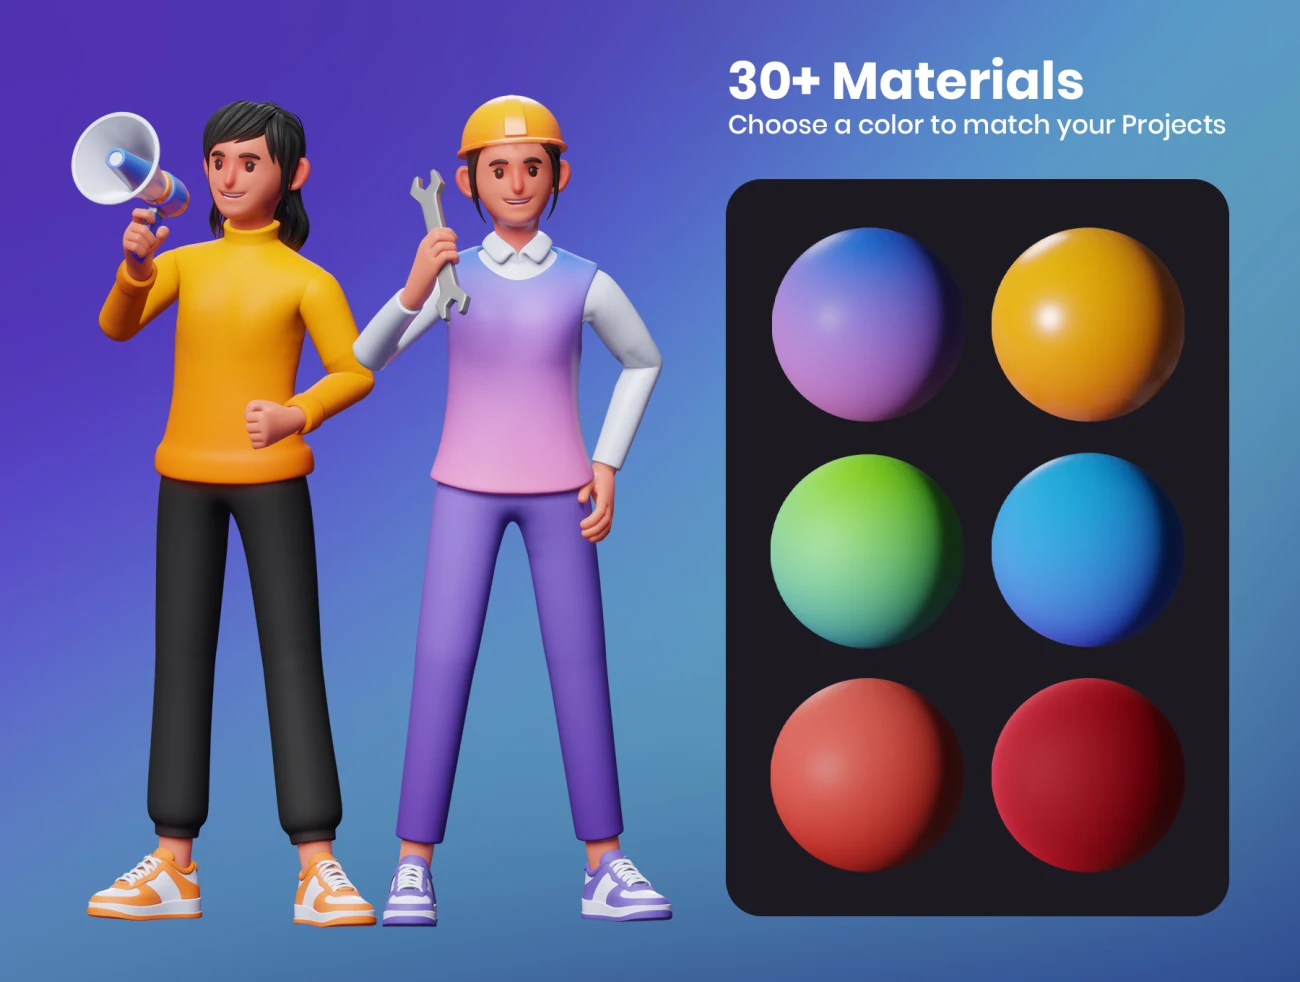 30款可定制3D人物角色工作状态插图 3D Characters Work Activity-3D/图标、人物插画、插画-到位啦UI